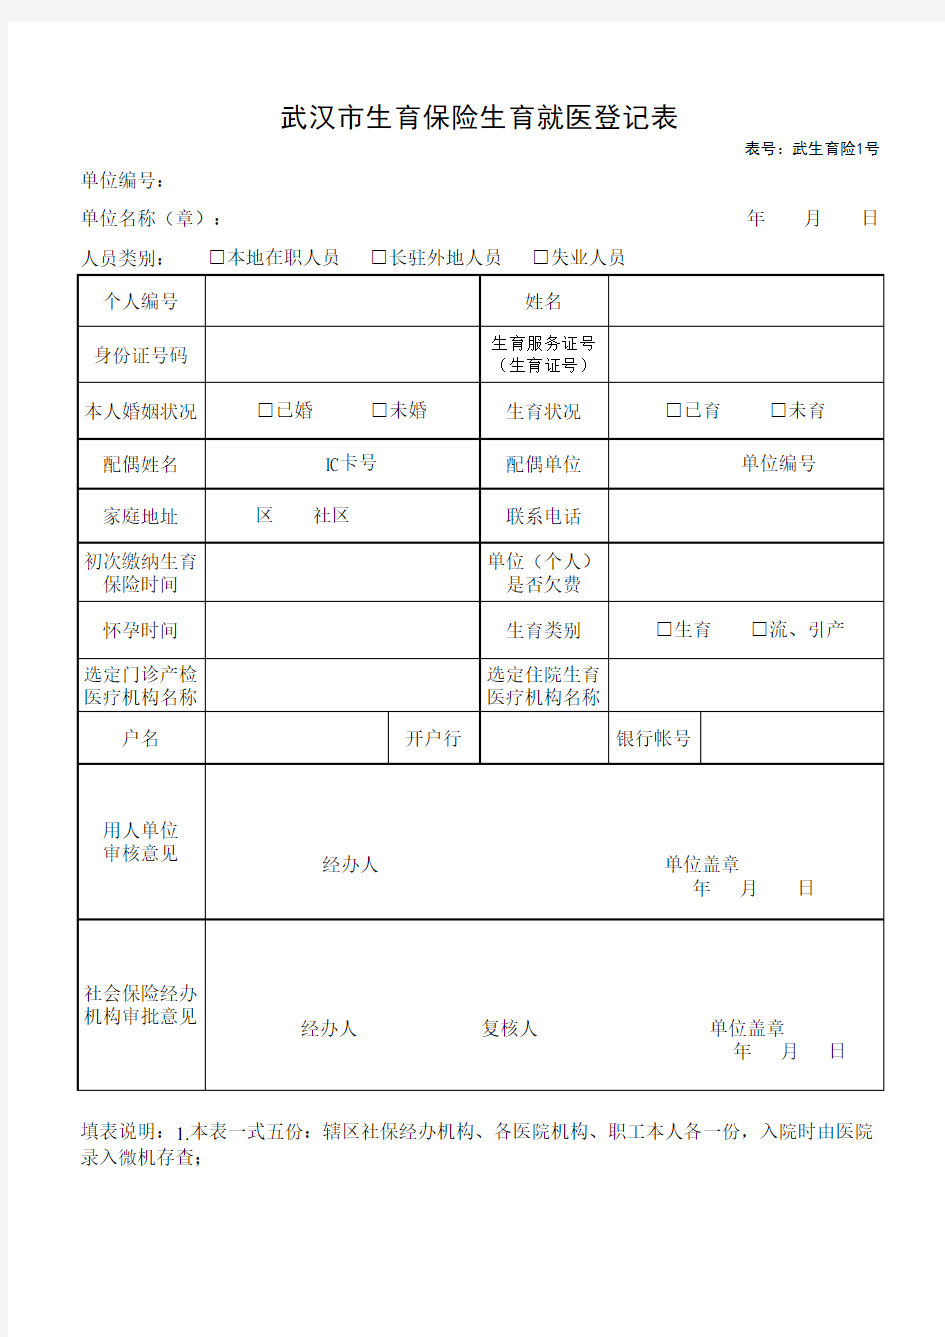 武汉市生育保险生育就医登记表